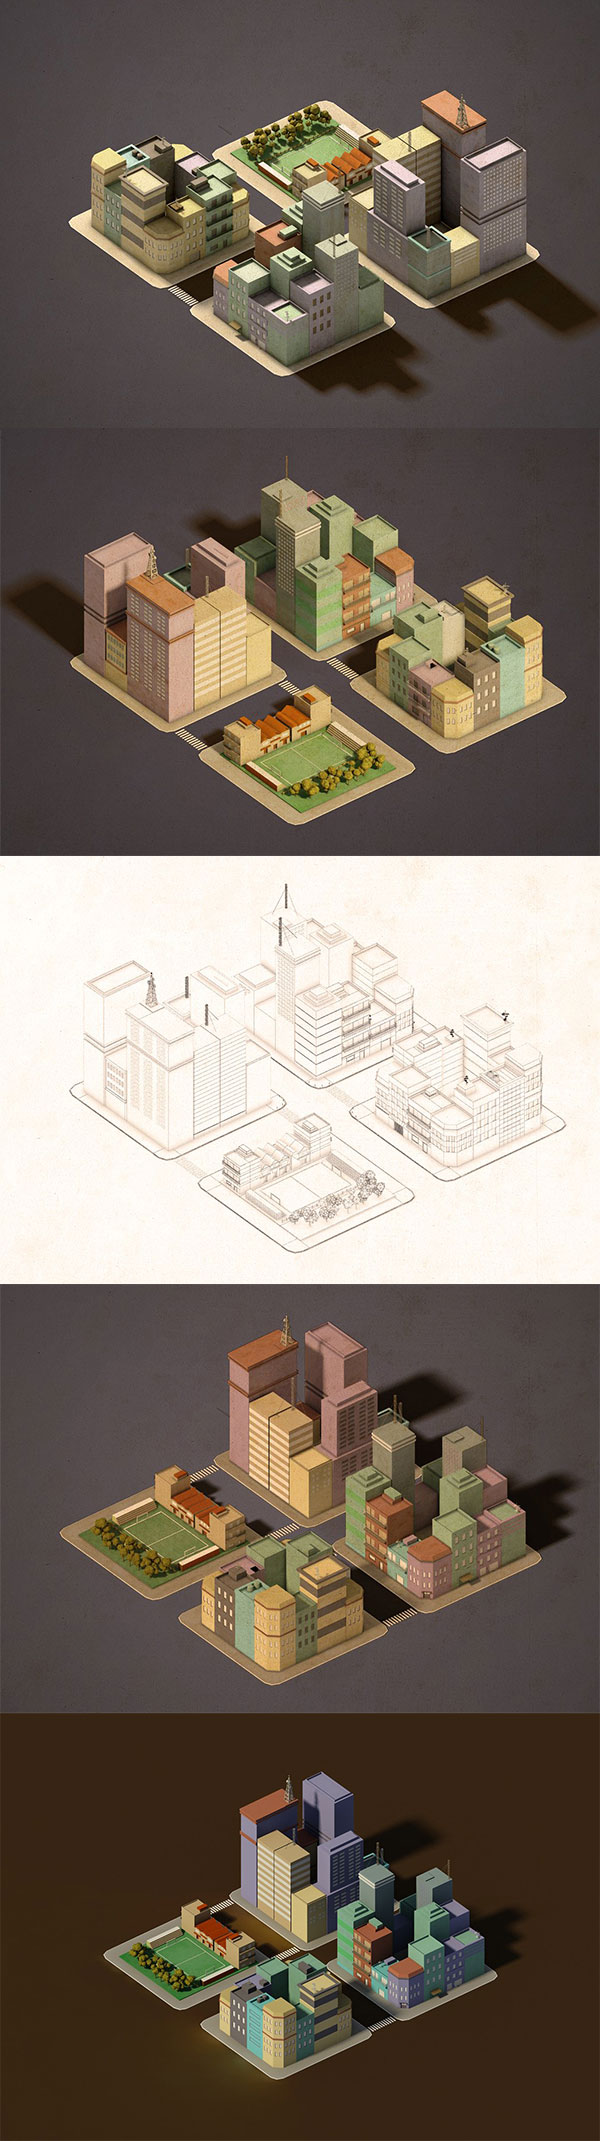 Tasmim Blog: برنامج تصميم بيوت كاملة ثلاثية الأبعاد 3d Home Architect